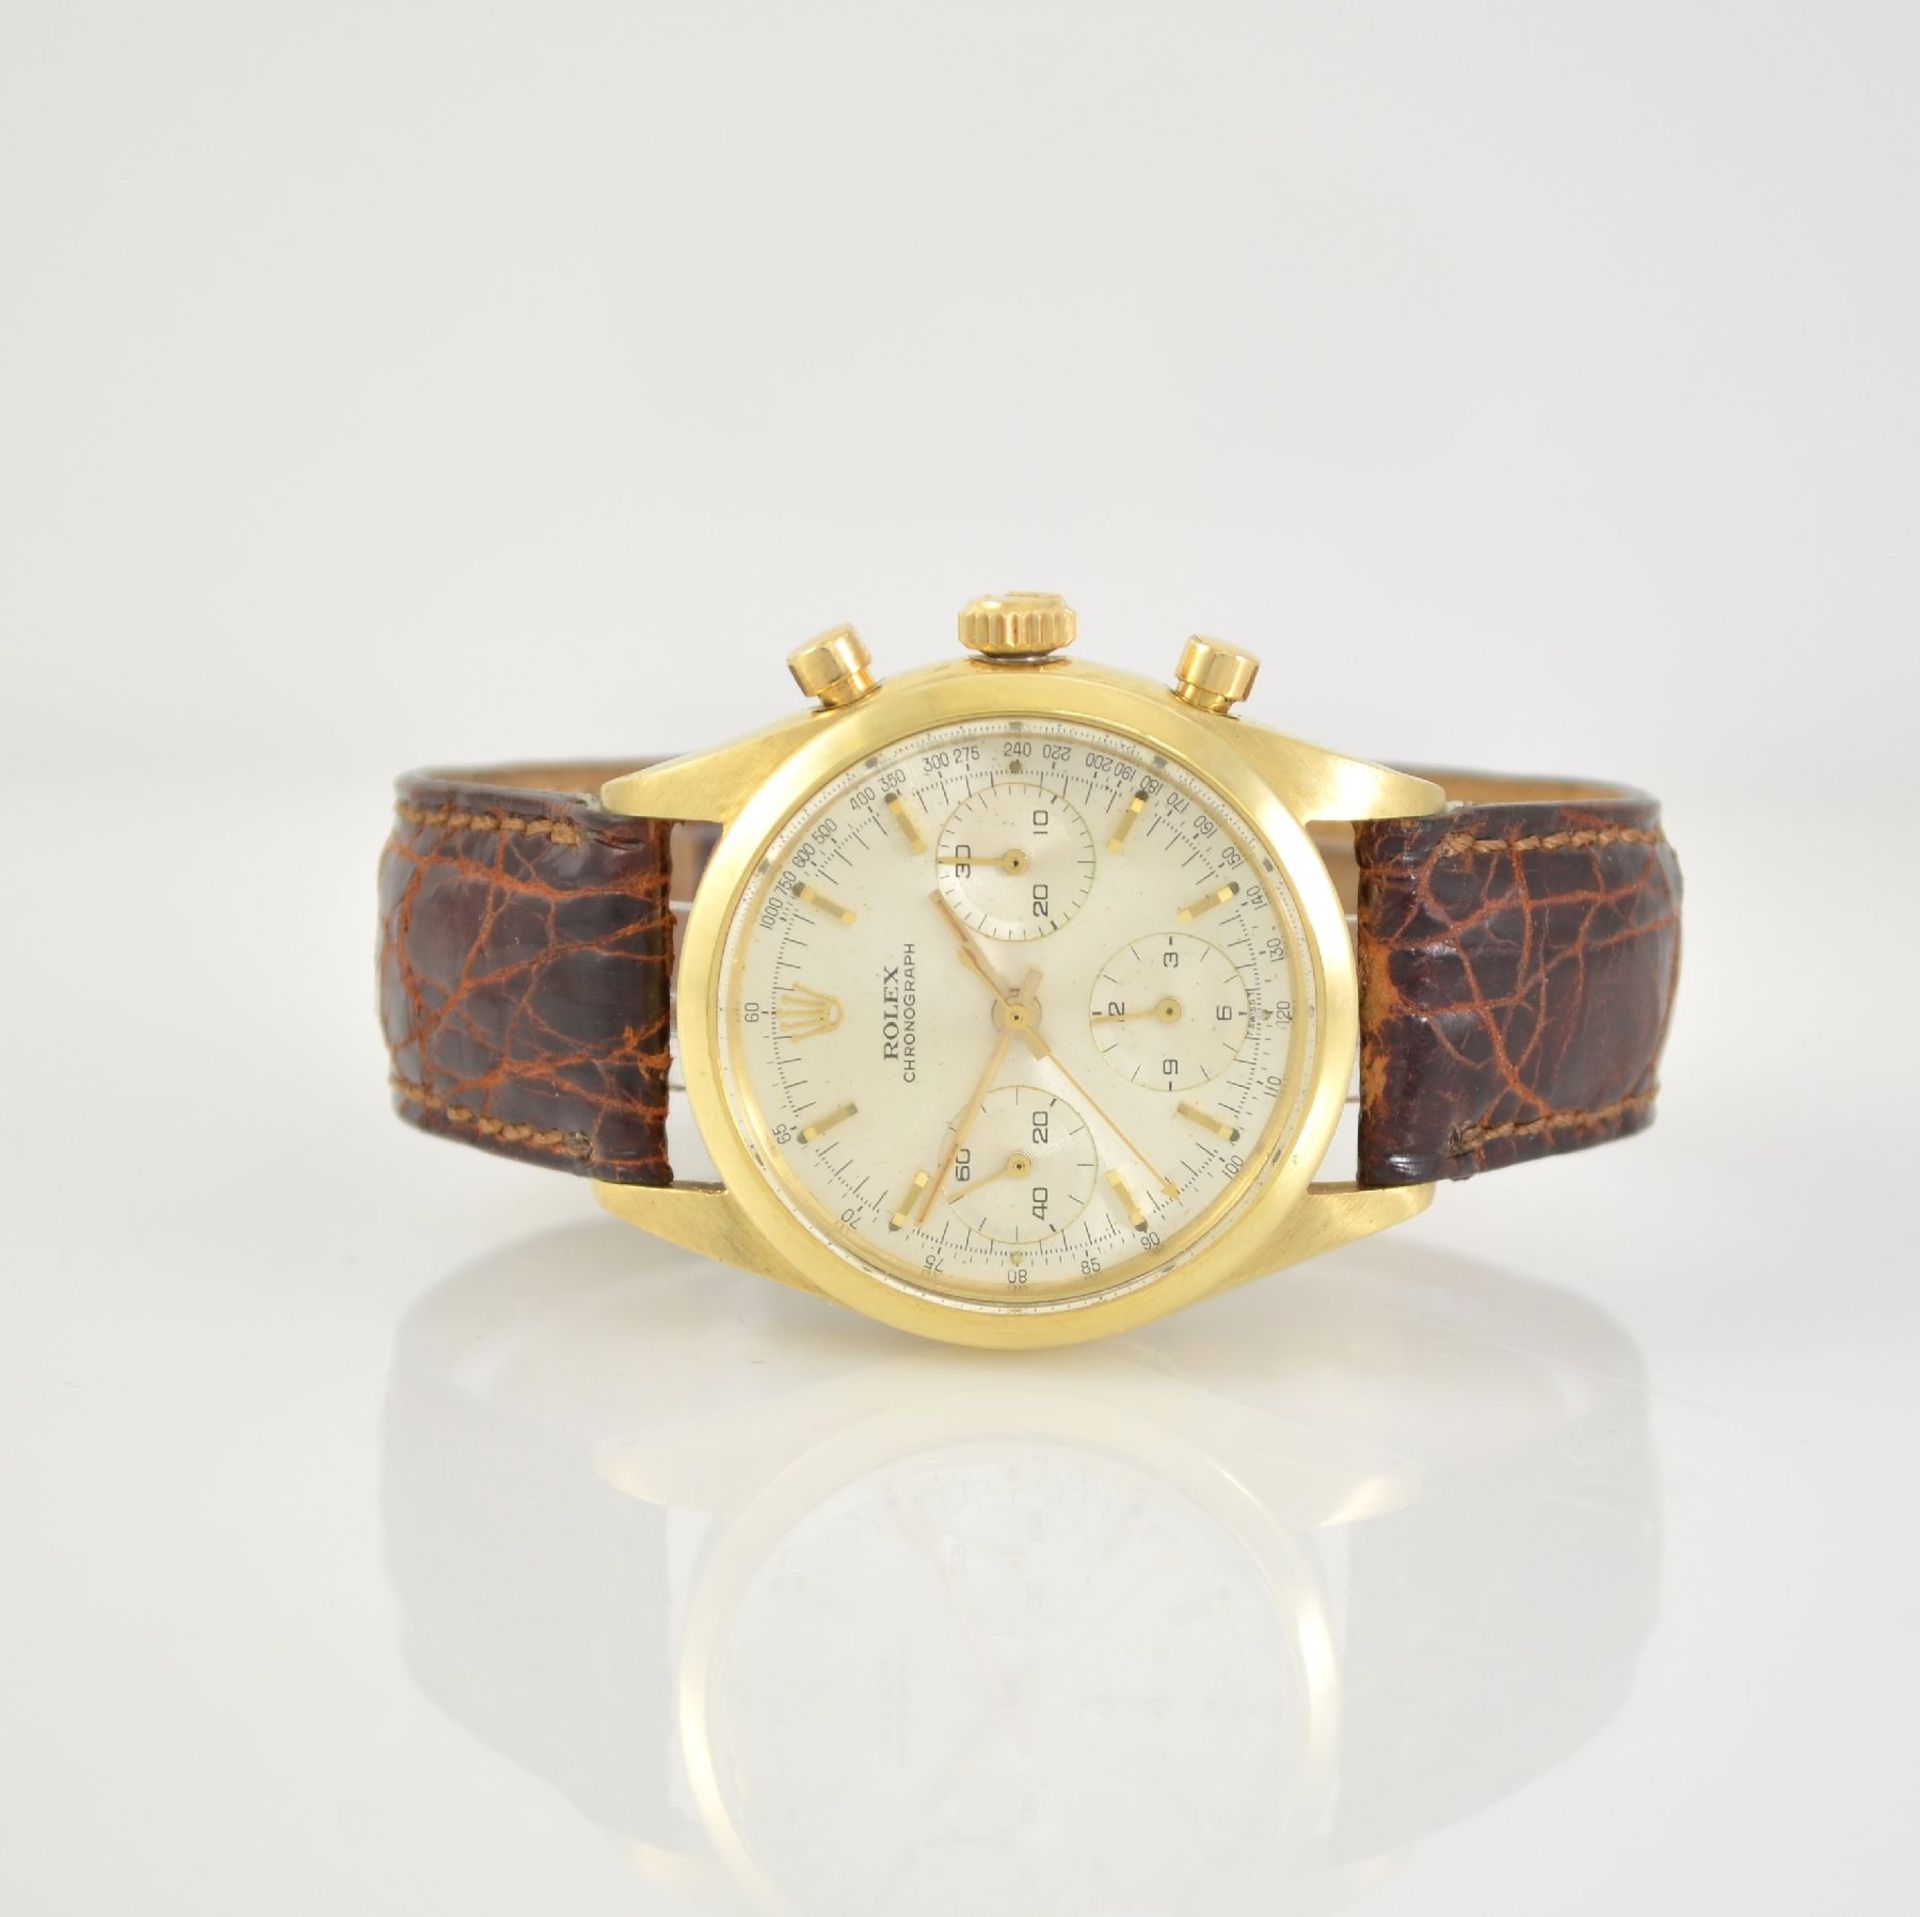 ROLEX fine and rare 14k yellow gold intermediate wheel round button chronograph so called Pre-